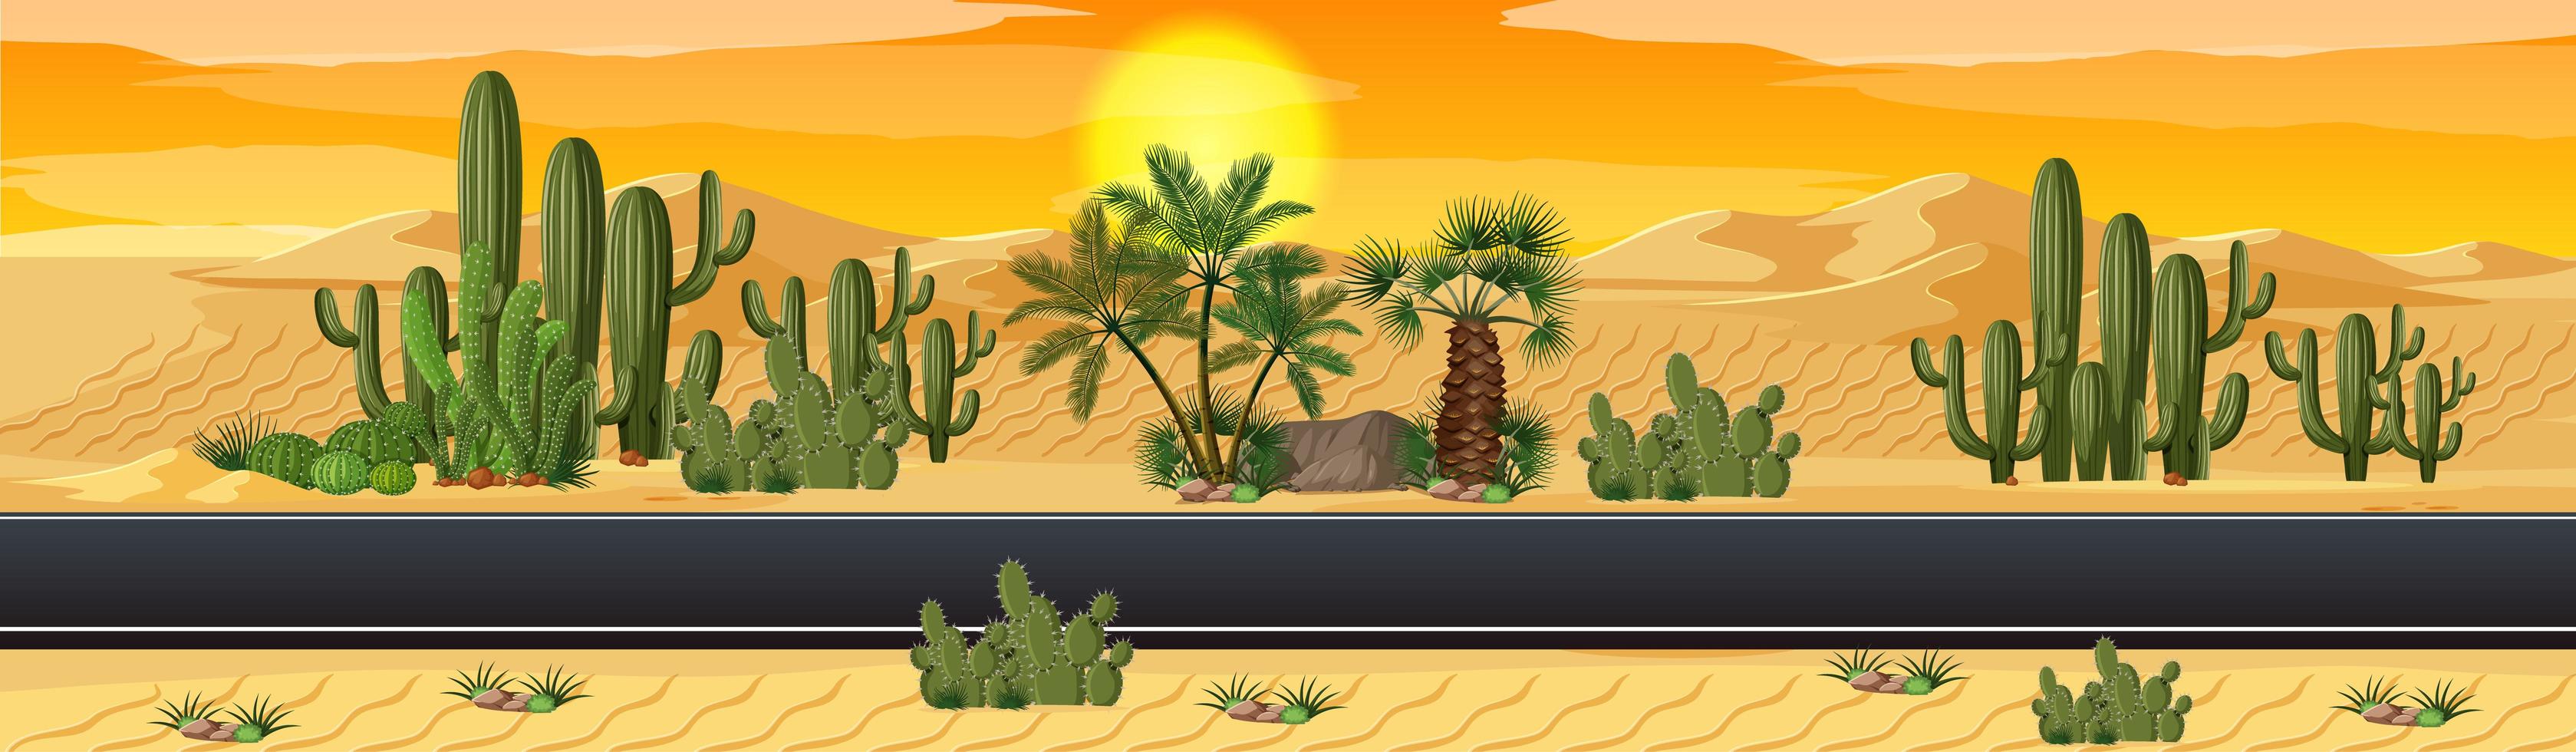 Wüste mit Straßennaturlandschaftsszene vektor